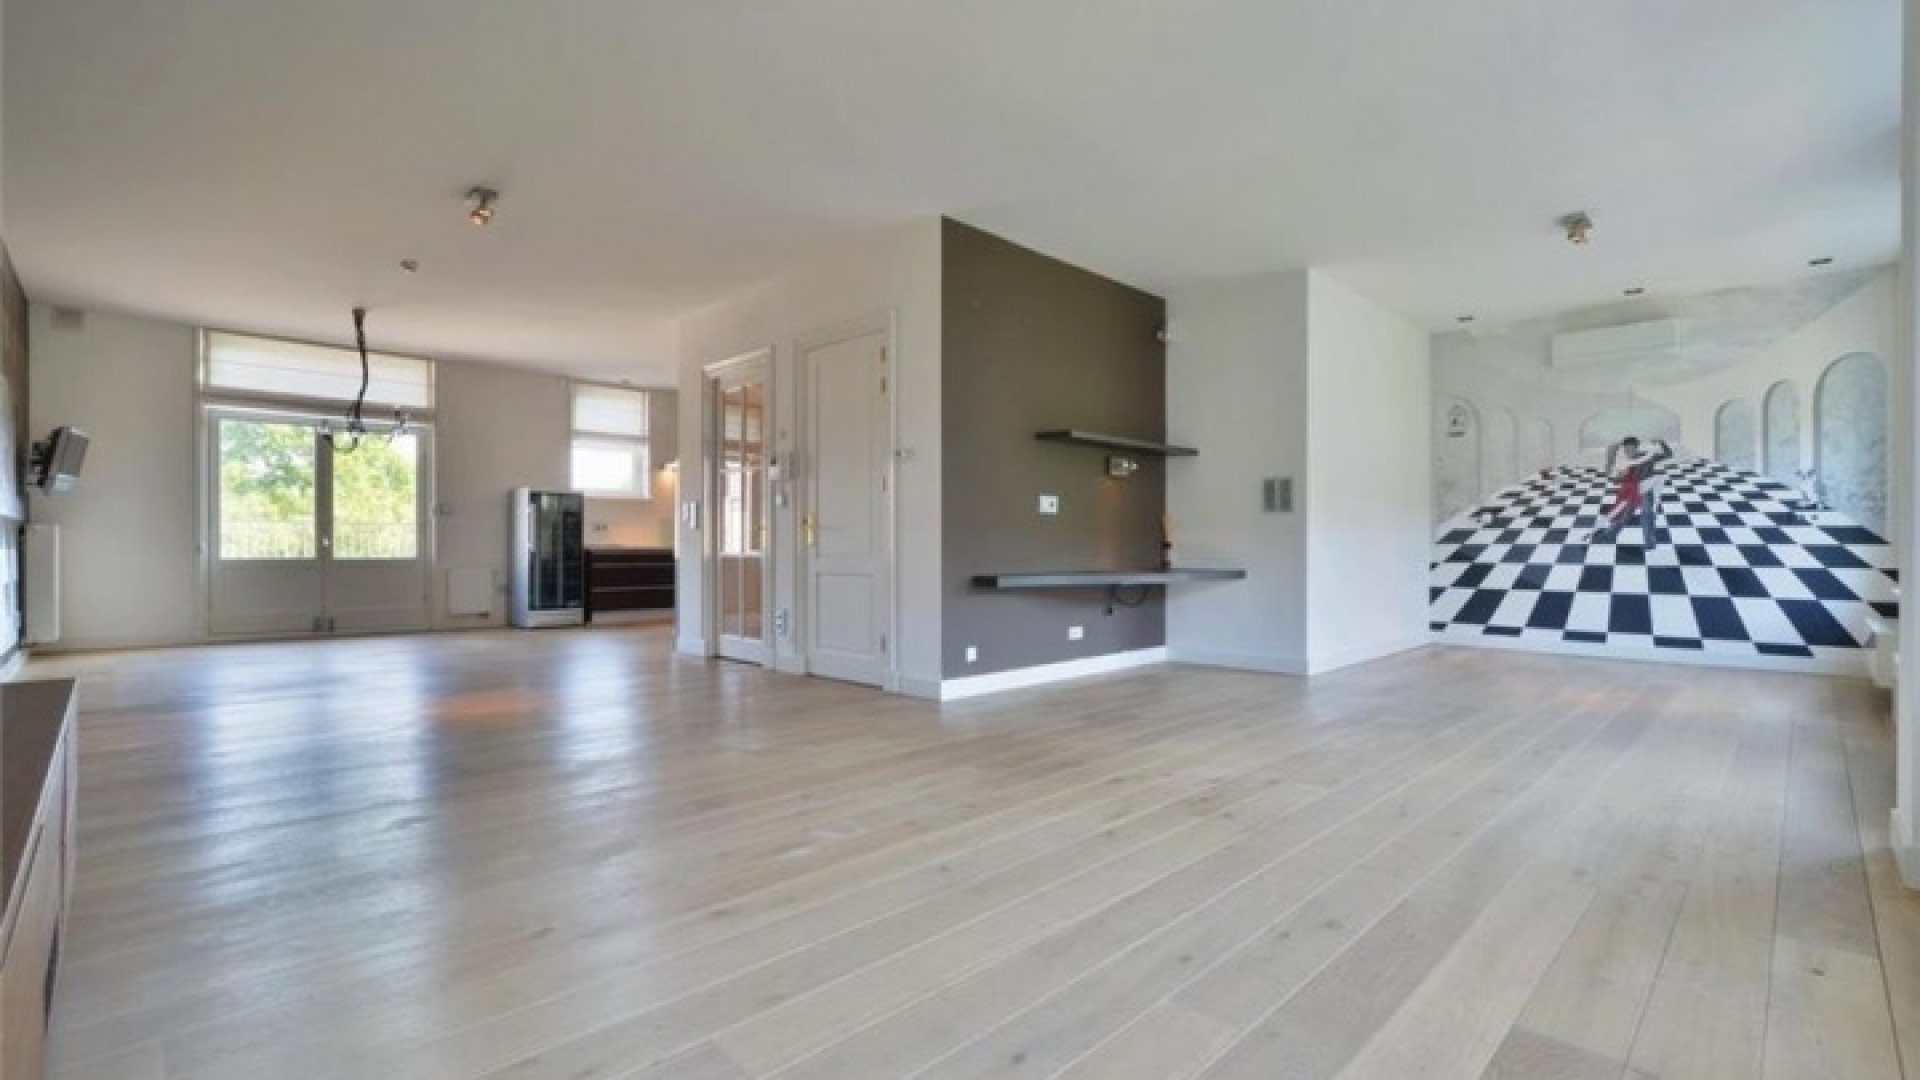 Frank Rijkaard zet zijn zeer luxe huis in Amsterdam Zuid te koop. Zie foto's